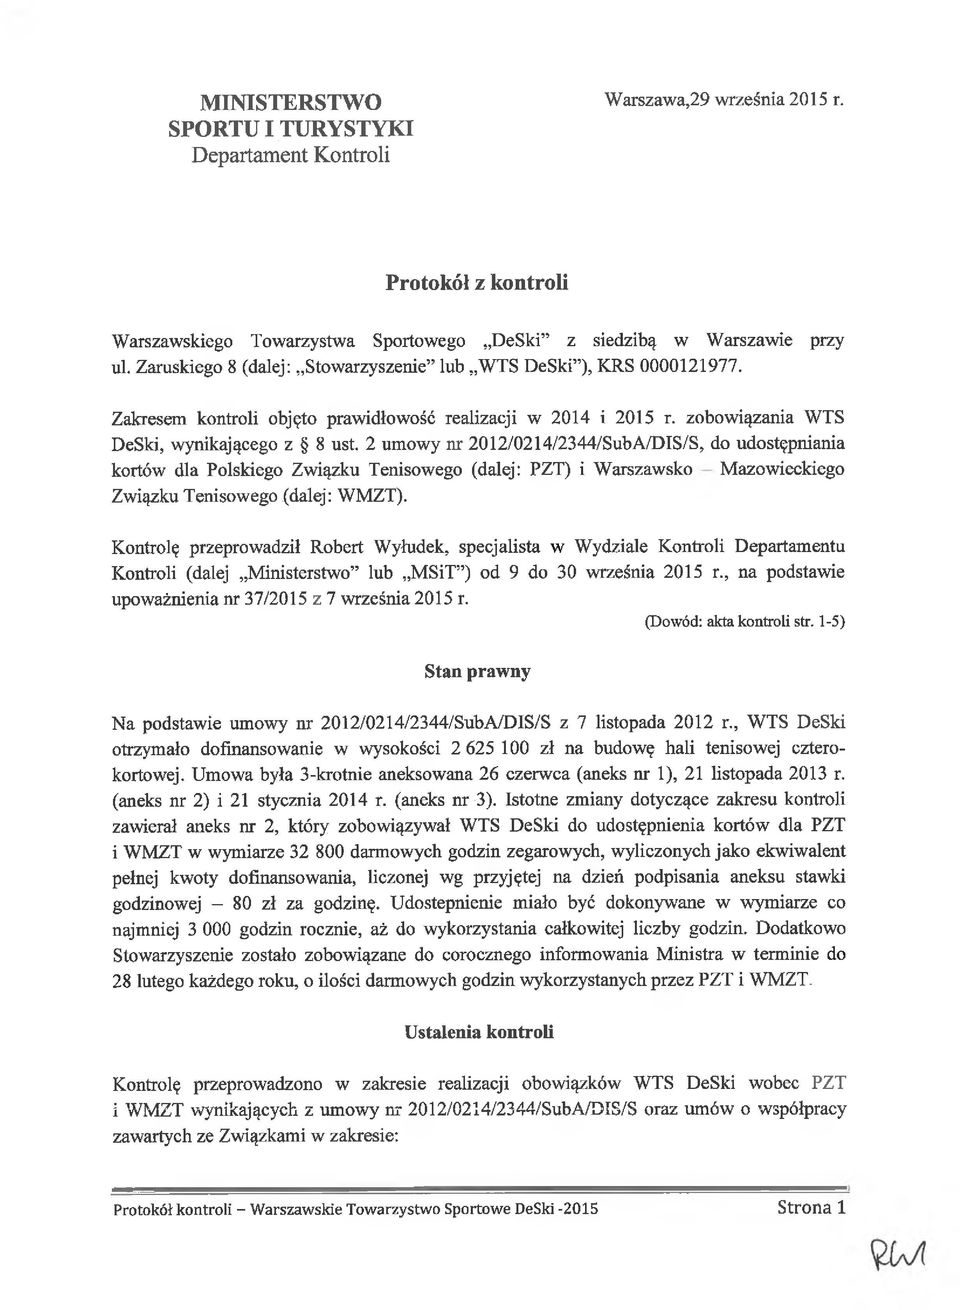 2 umowy nr 2012/0214/2344/SubA/DIS/S, do udostępniania kortów dla Polskiego Związku Tenisowego (dalej: PZT) i Warszawsko Mazowieckiego Związku Tenisowego (dalej: WMZT).